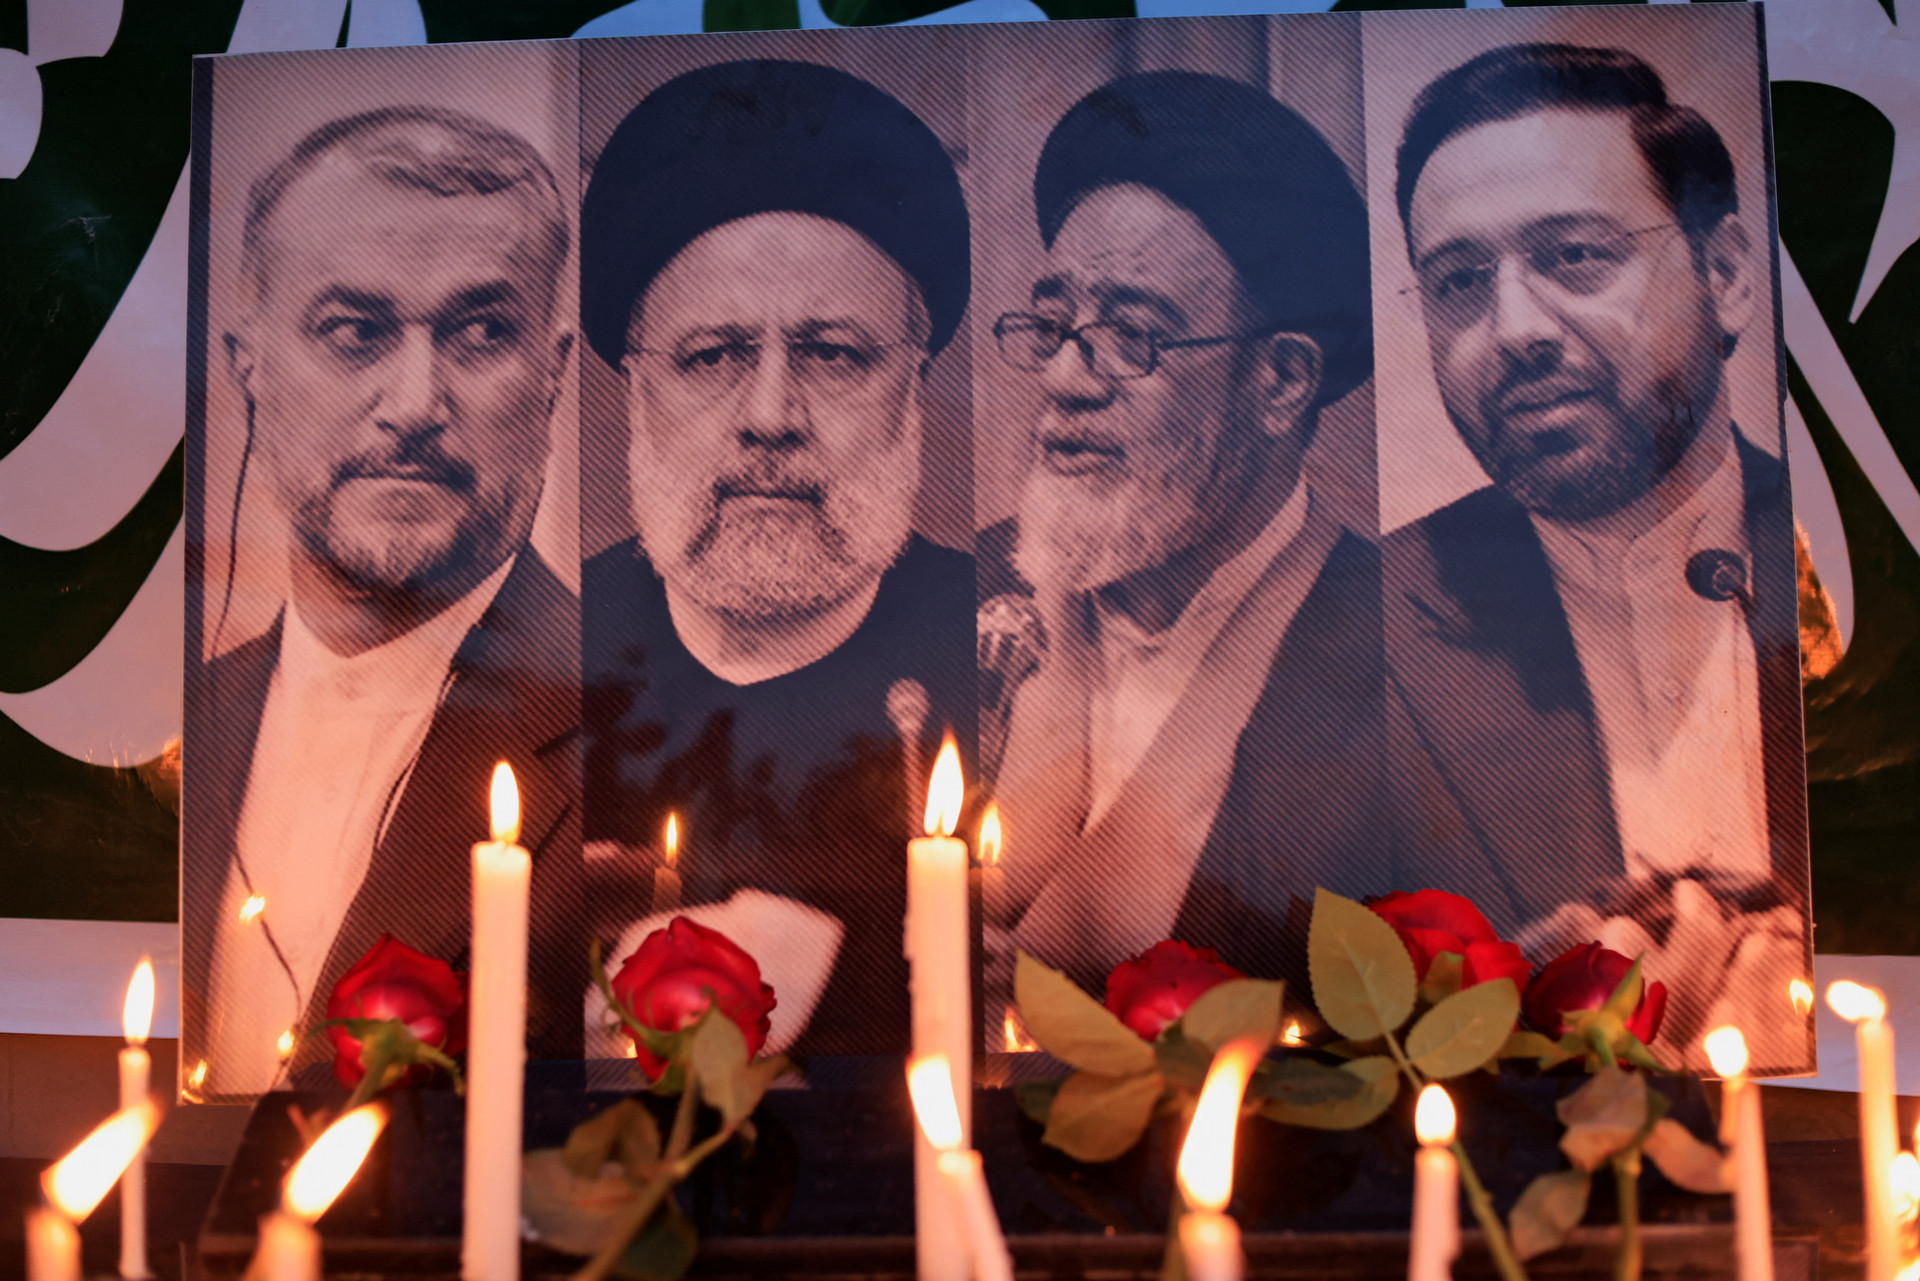 Khu vực tưởng niệm Tổng thống Iran Ebrahim Raisi và các quan chức tử nạn trong vụ máy bay rơi bên ngoài Đại sứ quán Iran ở Baghdad, Iraq ngày 20-5 - Ảnh: REUTERS